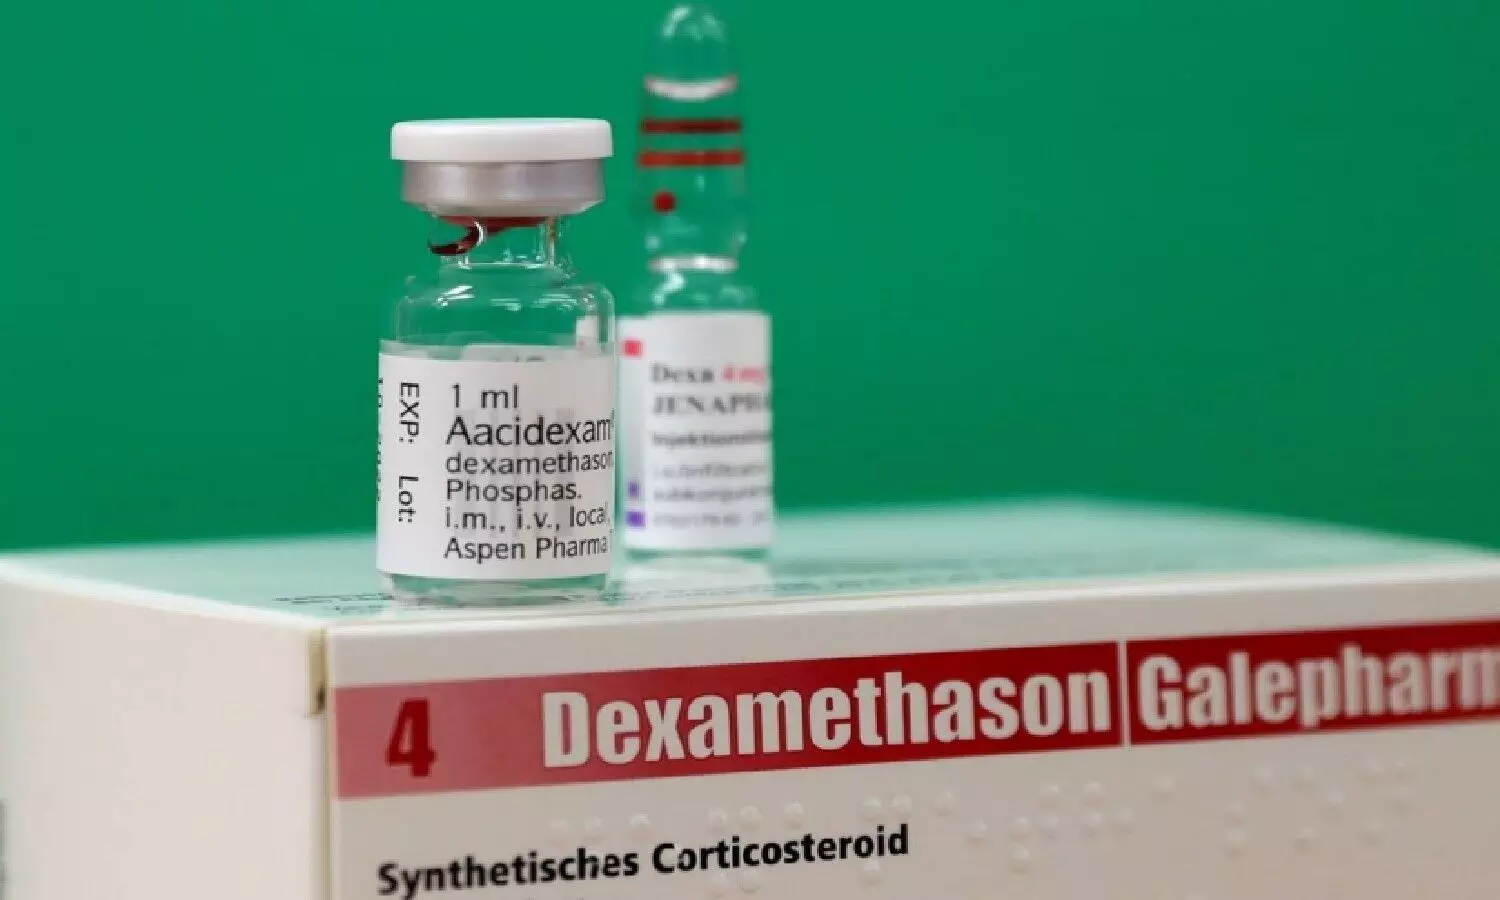 रेमडेसिविर इंजेक्शन के विकल्प के तौर में डेक्सामेथासोन इंजेक्शन के प्रयोग का सुझाव जाहिर किया है।